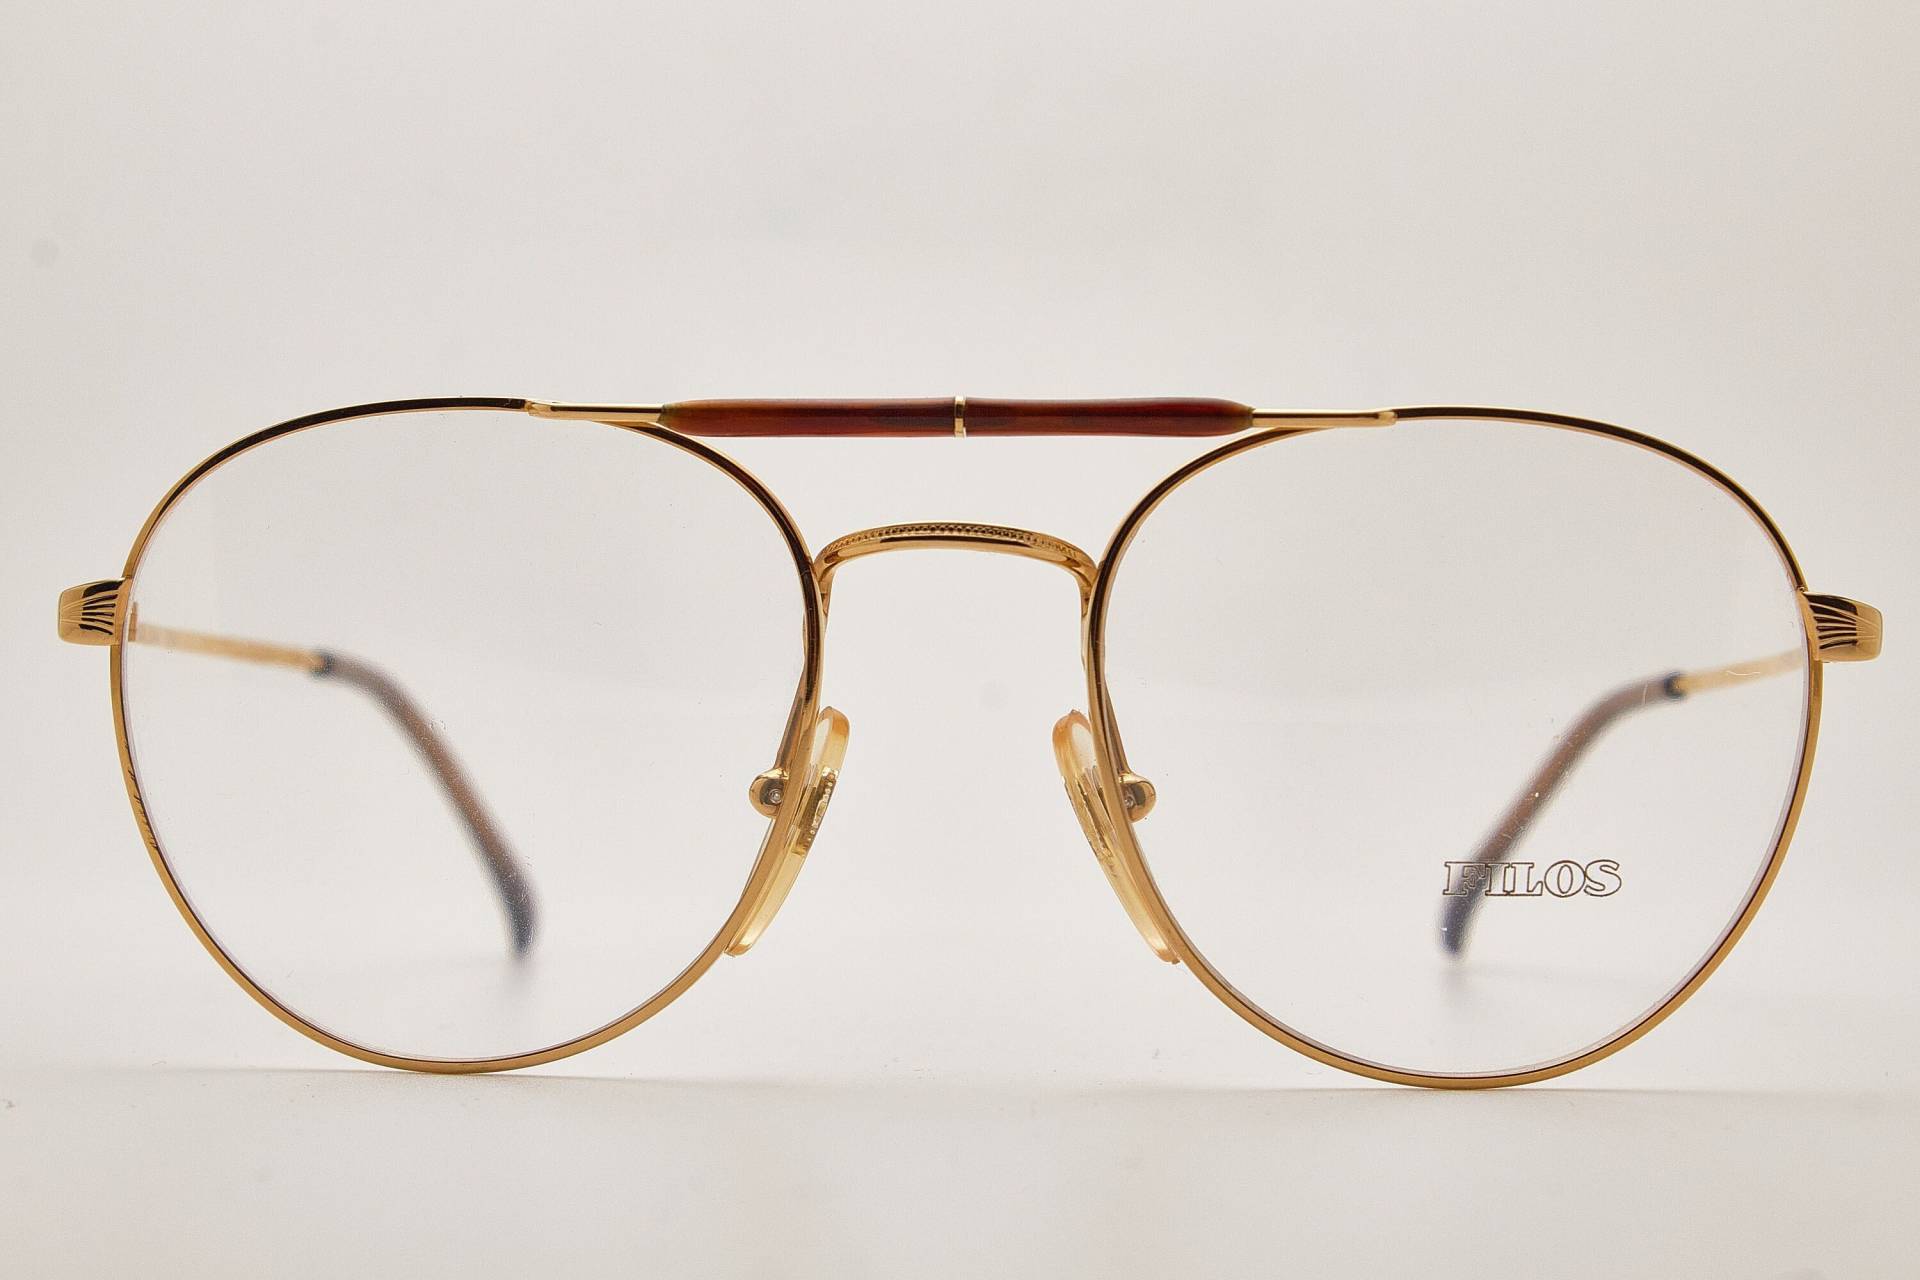 1980Er Jahre Brille/Men's Vintage Eyewear Filos 5549 Brown Gold Metal Frame/Hipster Brille/ Piloten Sonnenbrille/Oversizesonnenbrille/Fliegerbrille von VintageGlassesVault